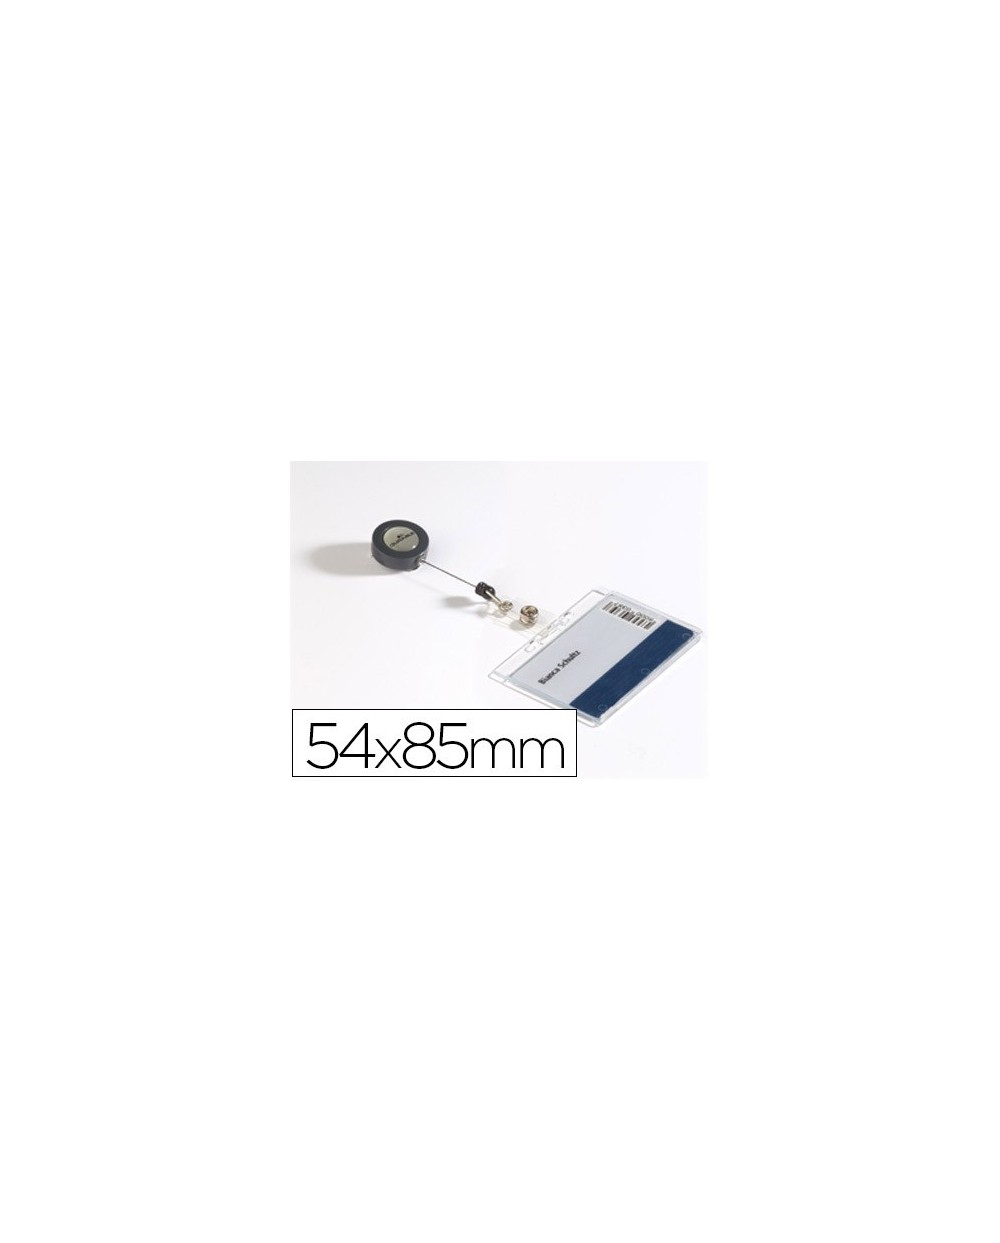 Identificador con cordon extensible durable uso vertical horizontal 54x85 mm